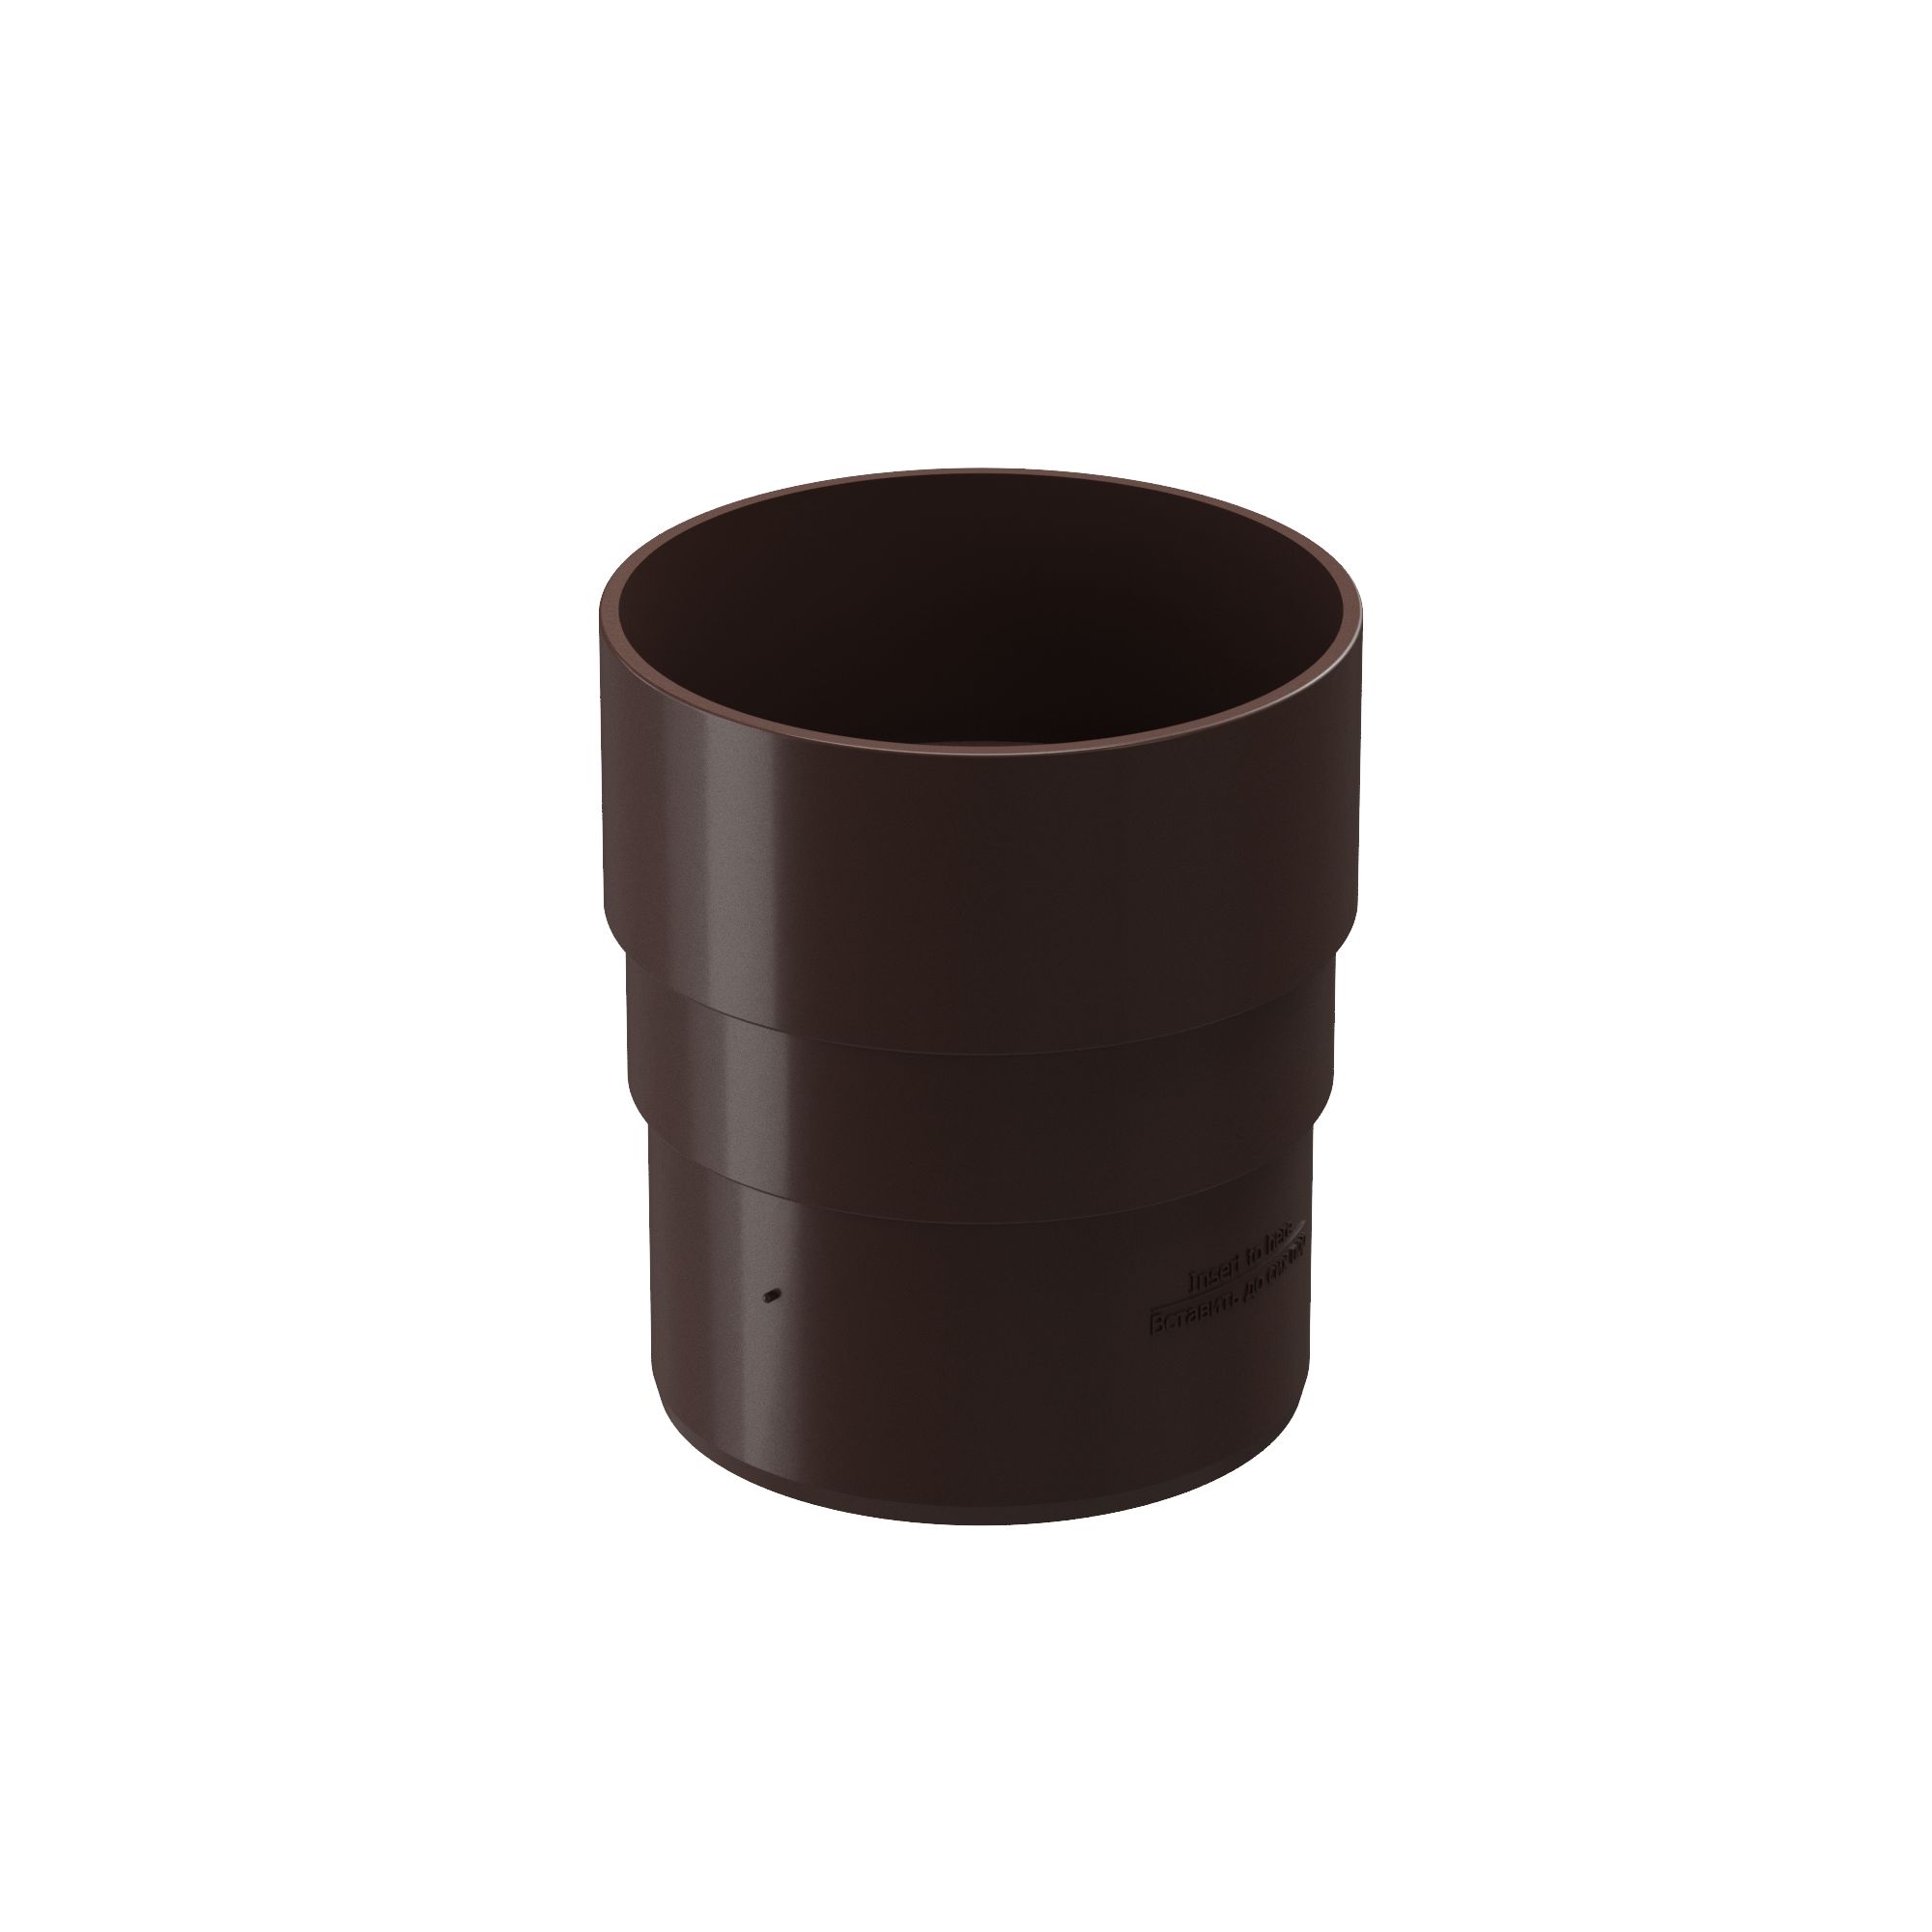 Соединитель (муфта) трубы пластиковый Docke Premium, Соединитель (муфта) трубы темно-коричневый шоколад ПВХ